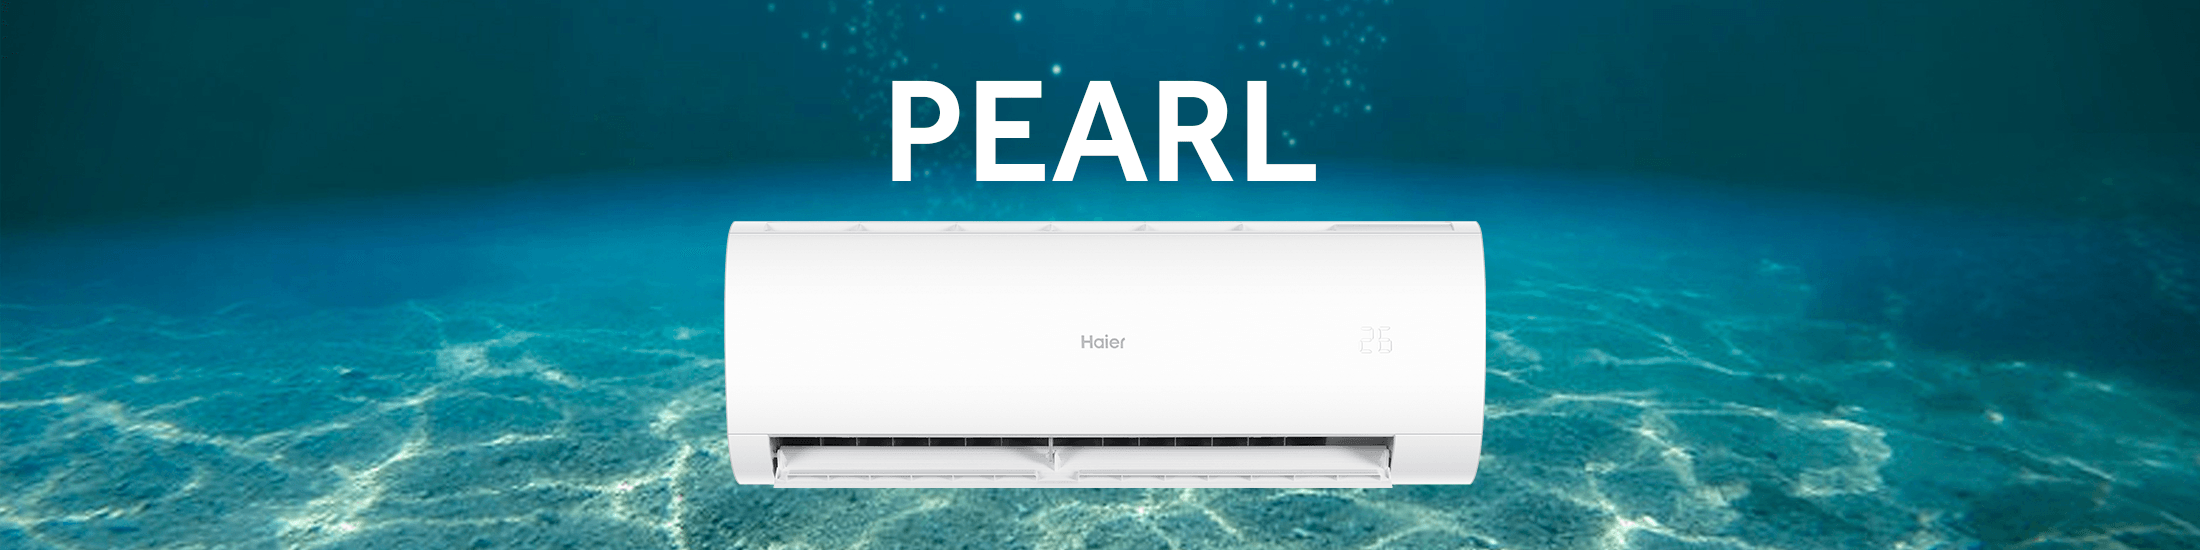 Haier Pearl Web Banner